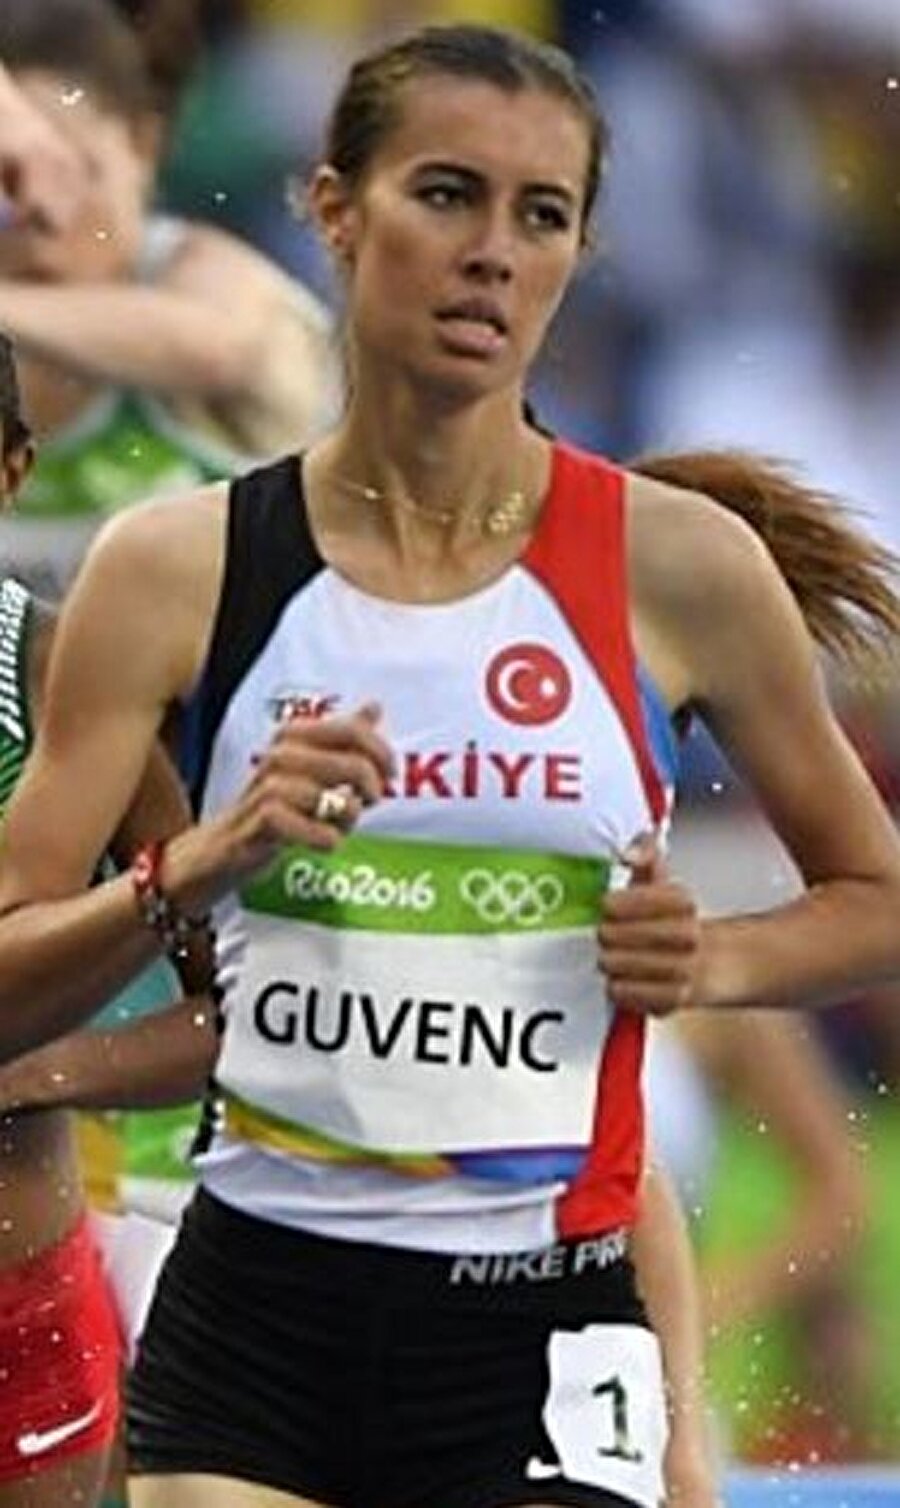 3 sporcumuz veda etti
Kadınlar 3 bin metre engelli branşında Türkiye'yi temsil eden Özlem Kaya, Tuğba Güvenç ve Meryem Akdağ elemeleri geçemedi ve oyunlara veda etti. 
